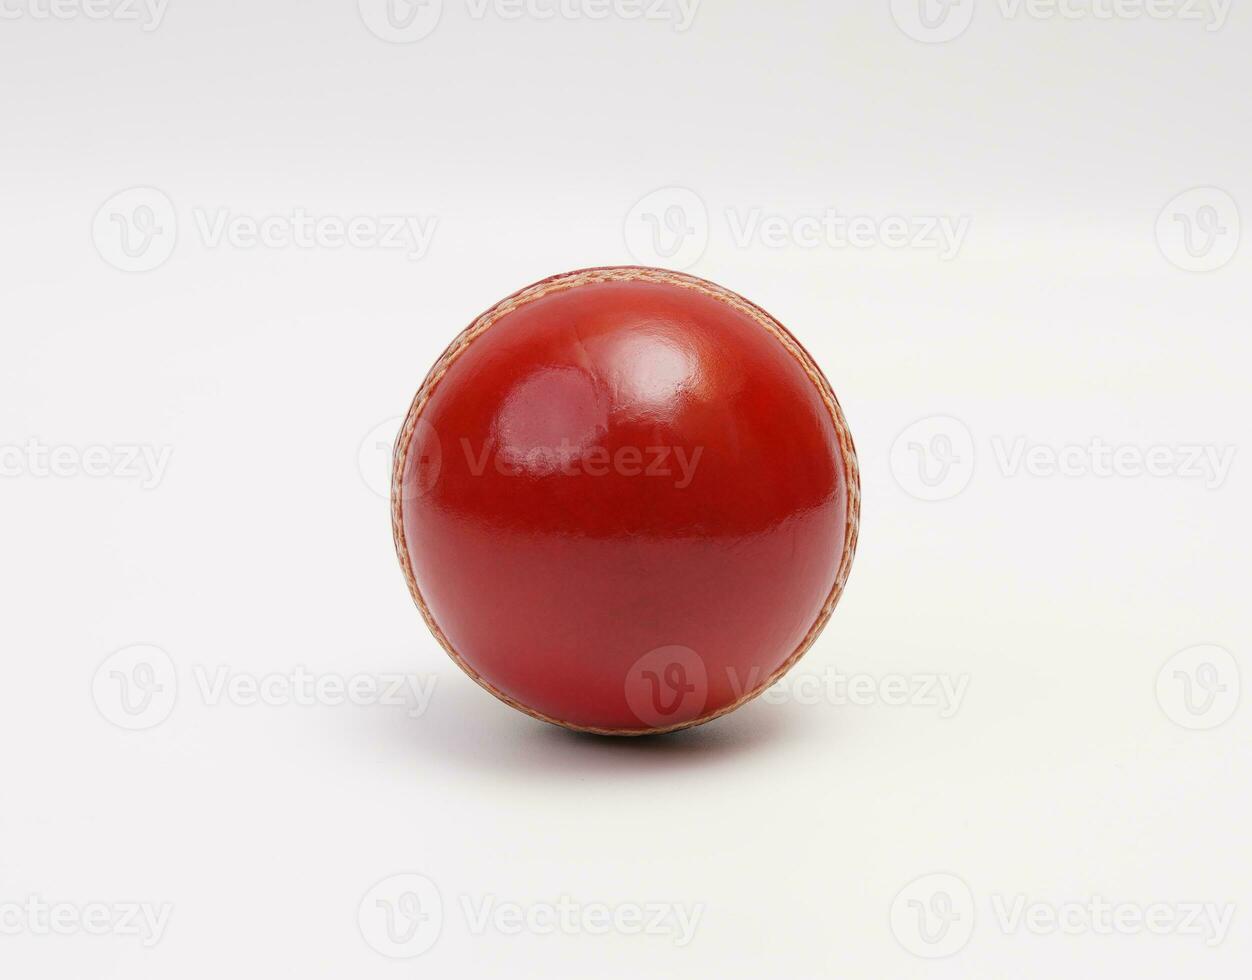 en skinande ny testa match cricket boll läder hård cirkel sy närbild bild på vit bakgrund foto